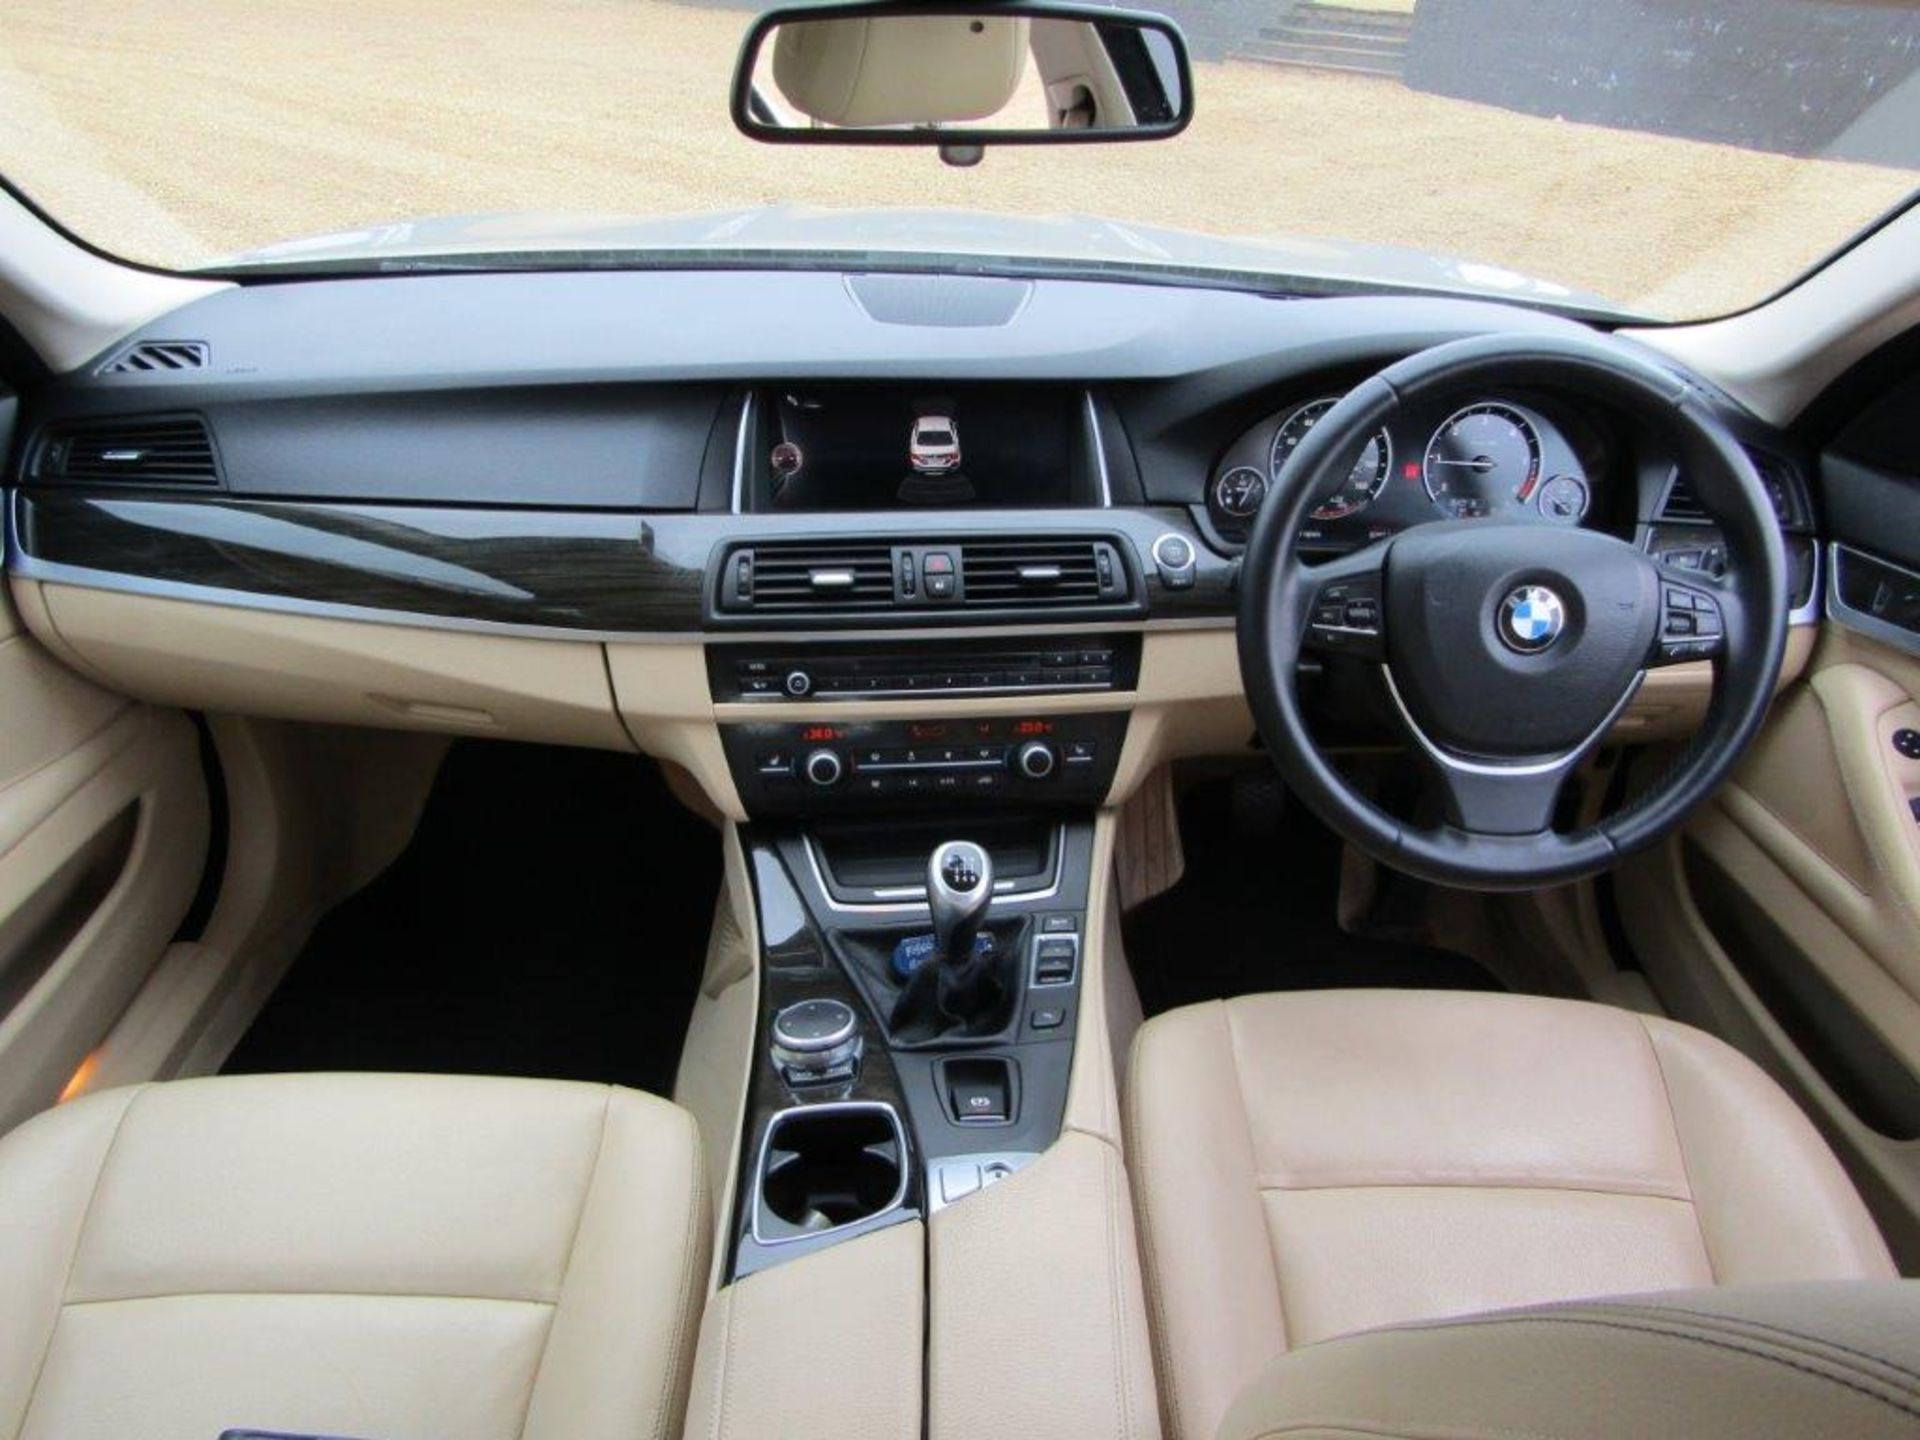 64 15 BMW 520D Luxury - Image 27 of 33